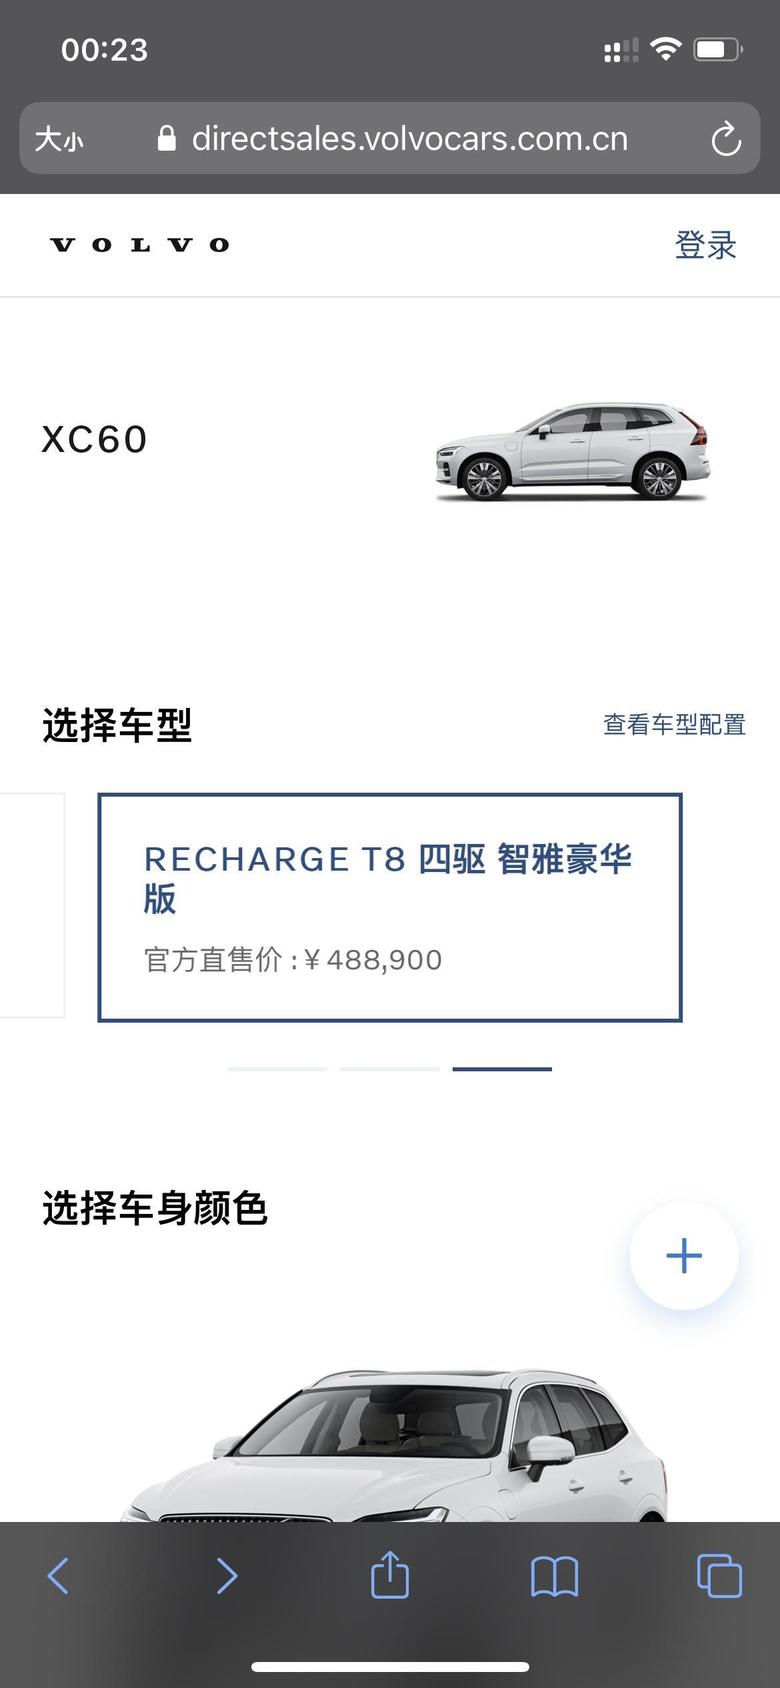 沃尔沃xc60 recharge 上海直销价格包含保险了吗？